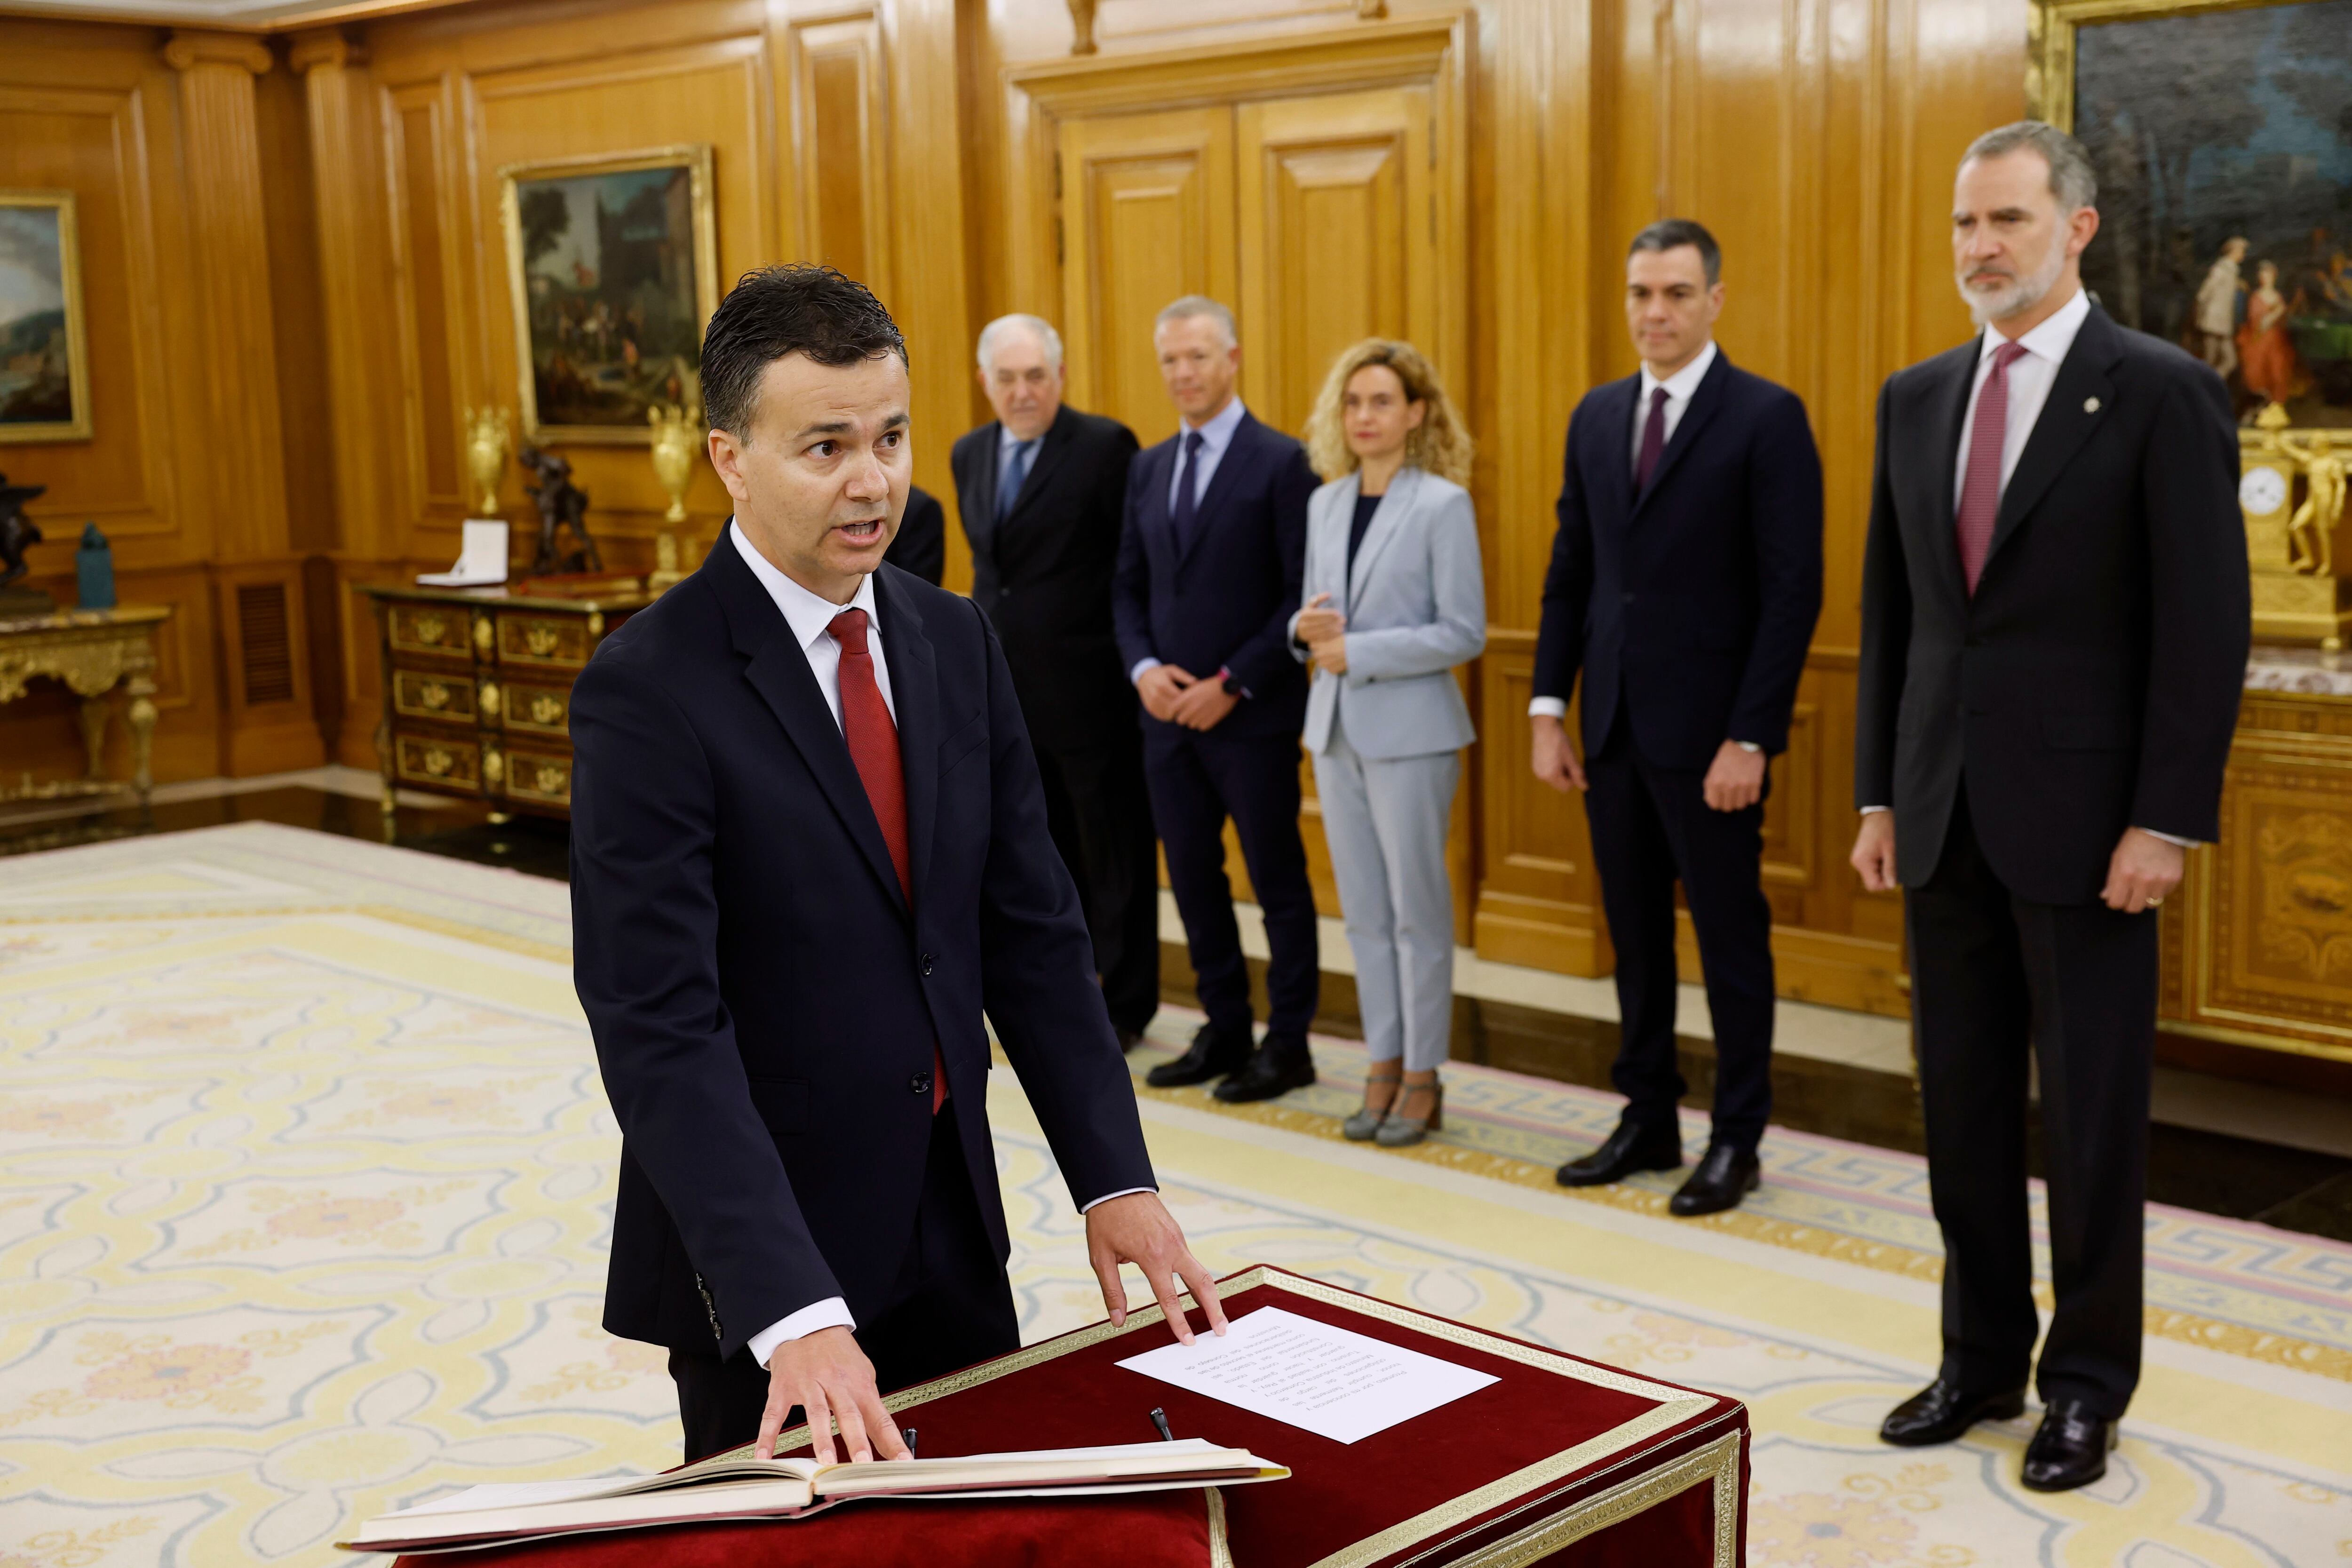 El nuevo ministro de Industria, Comercio y Turismo, Héctor Gómez, jura o promete su cargo ante el rey Felipe.